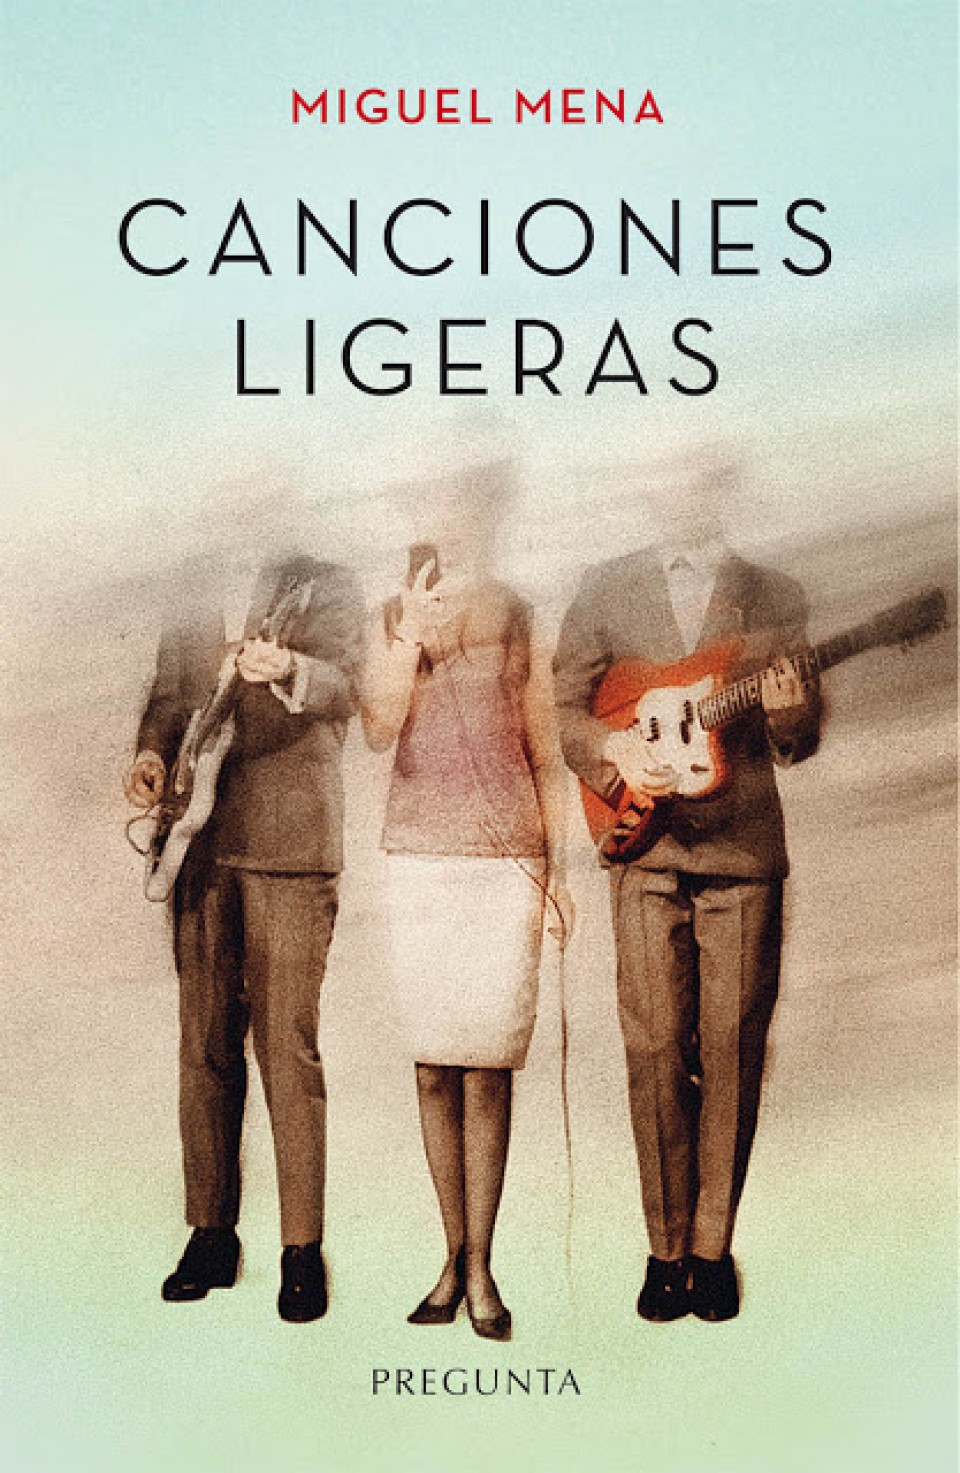 Imagen Portada 'Canciones ligeras'